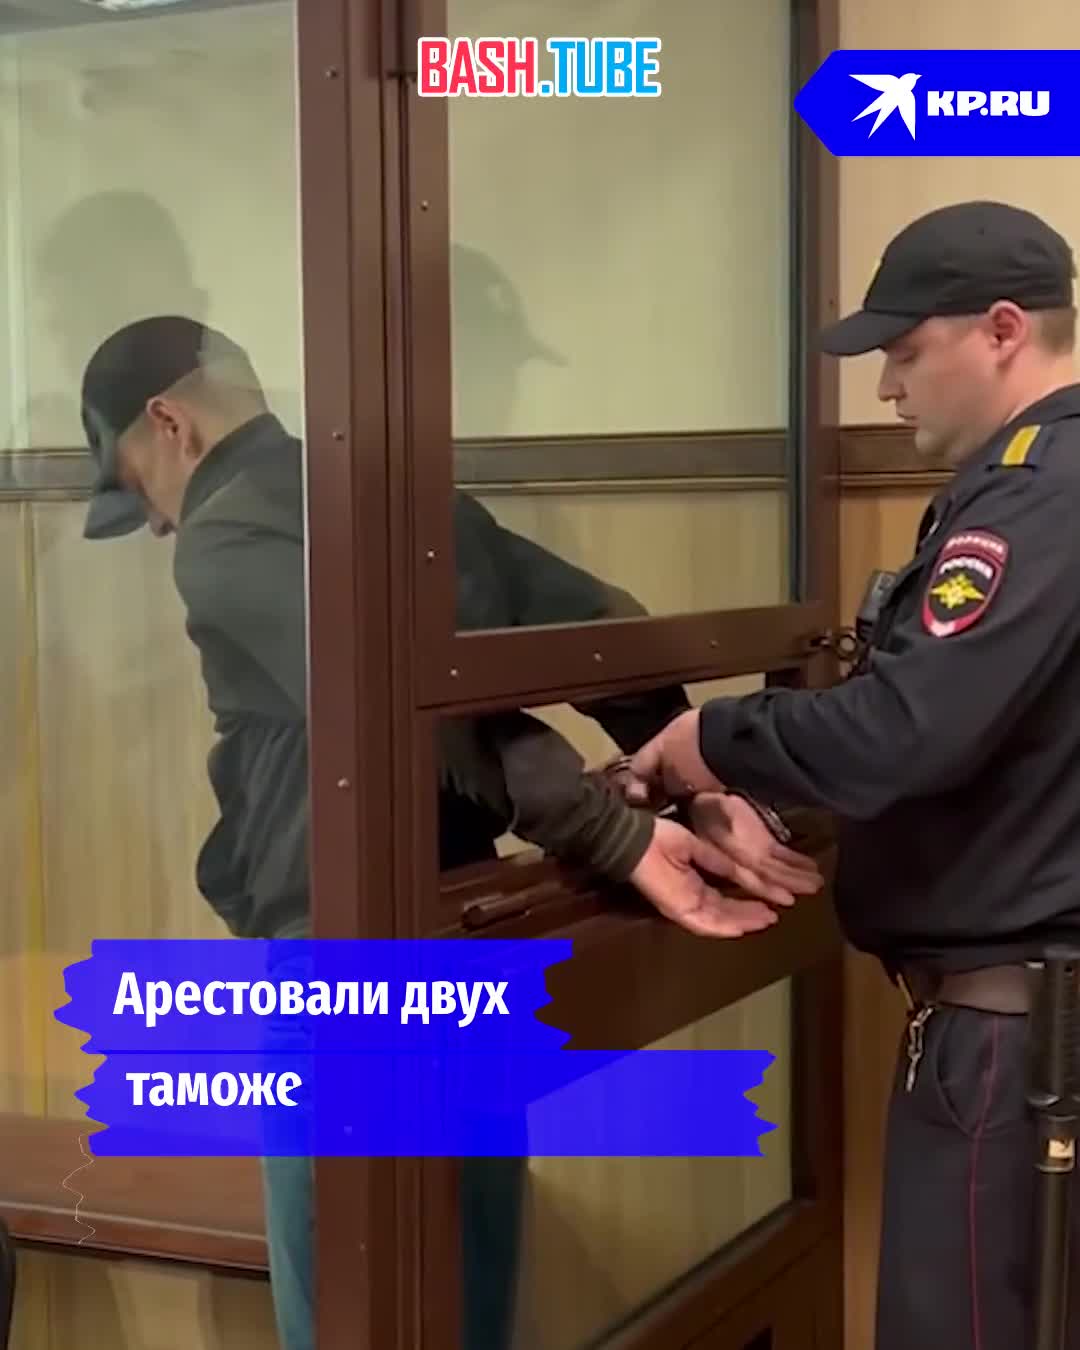  В Новосибирске арестовали двух таможенников, которые попались на взятке